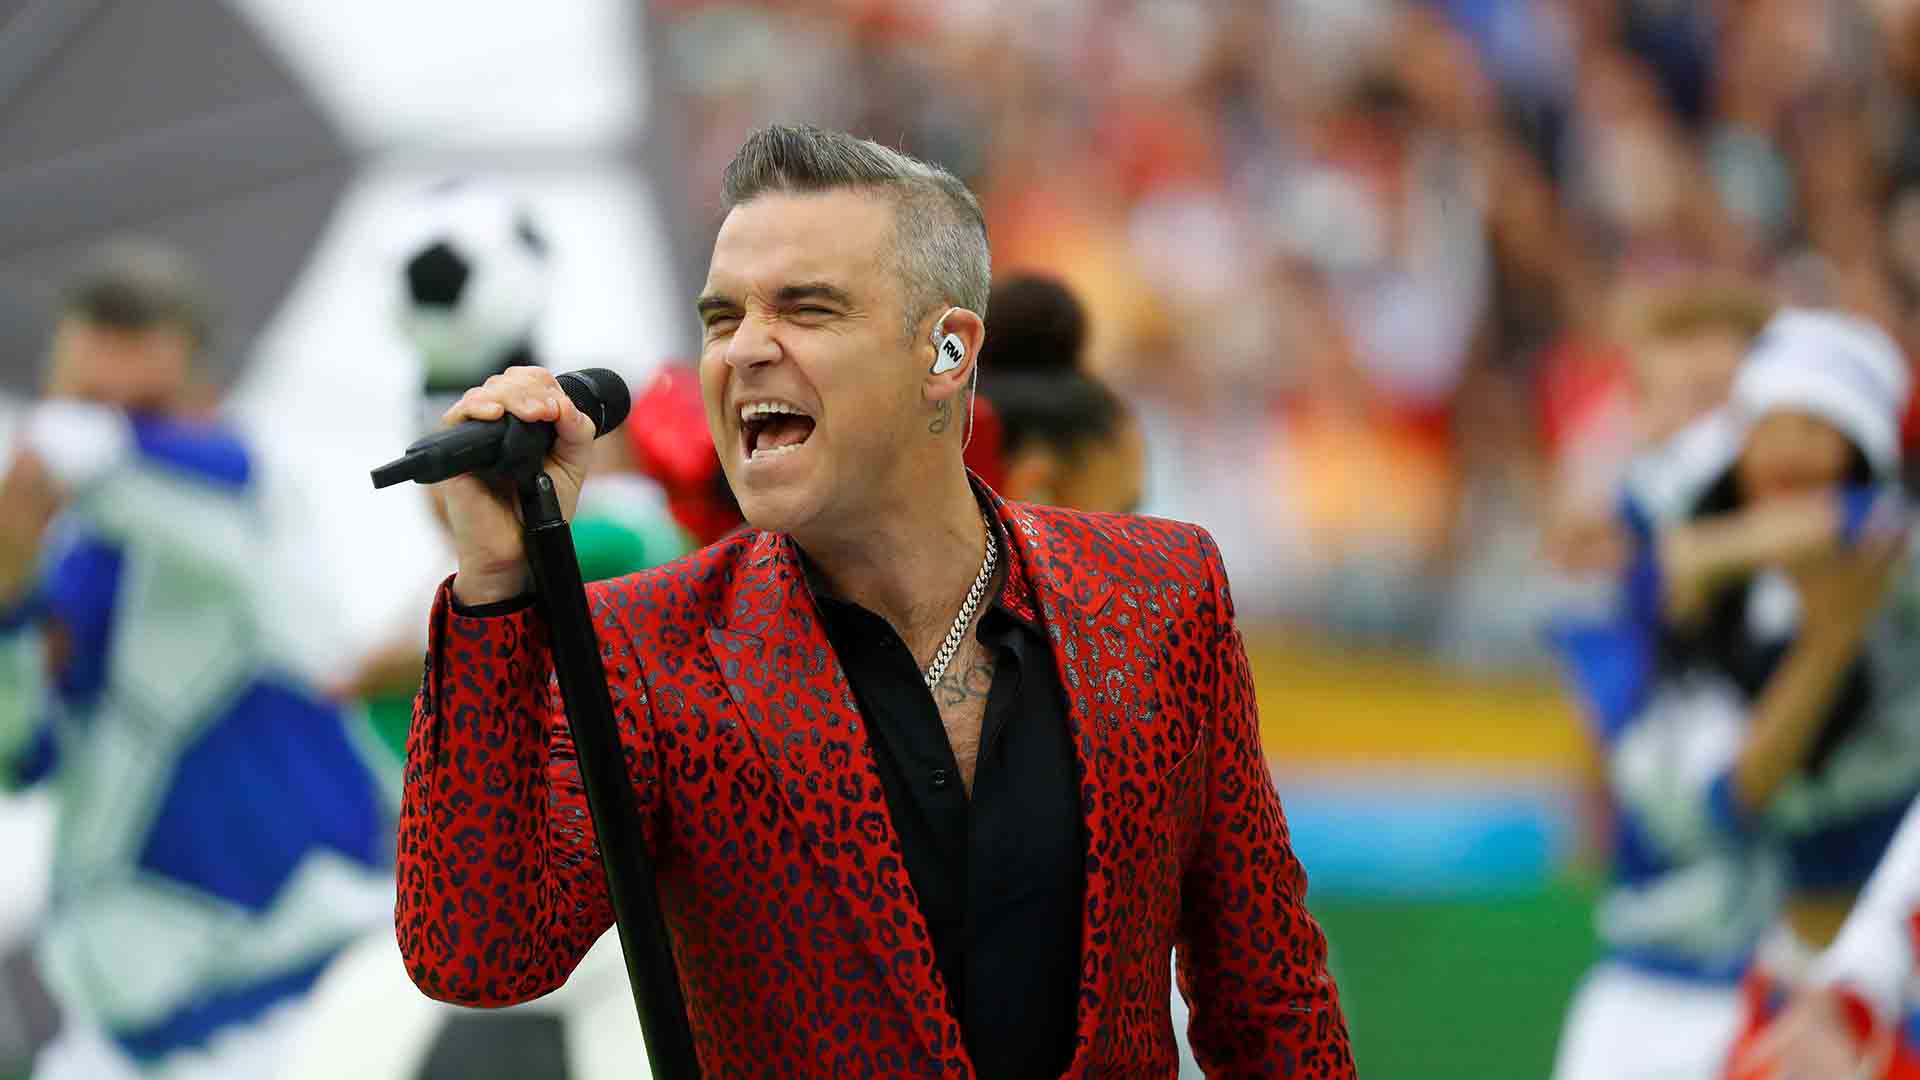 El cantante Robbie Williams cree que tiene el síndrome de Asperger